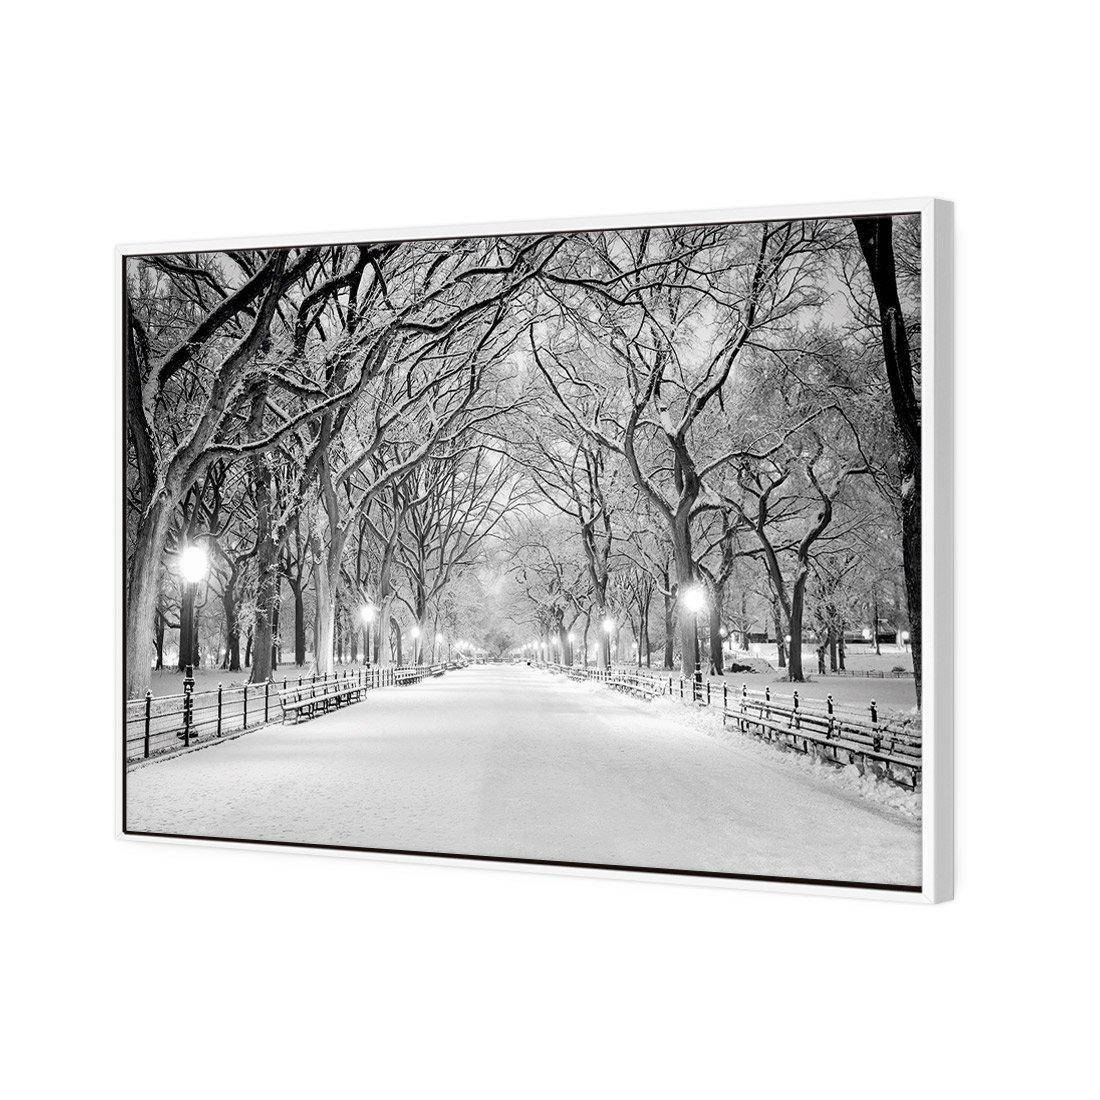 Central Park Dawn in Snow Canvas Art-Canvas-Wall Art Designs-45x30cm-Canvas - White Frame-Wall Art Designs